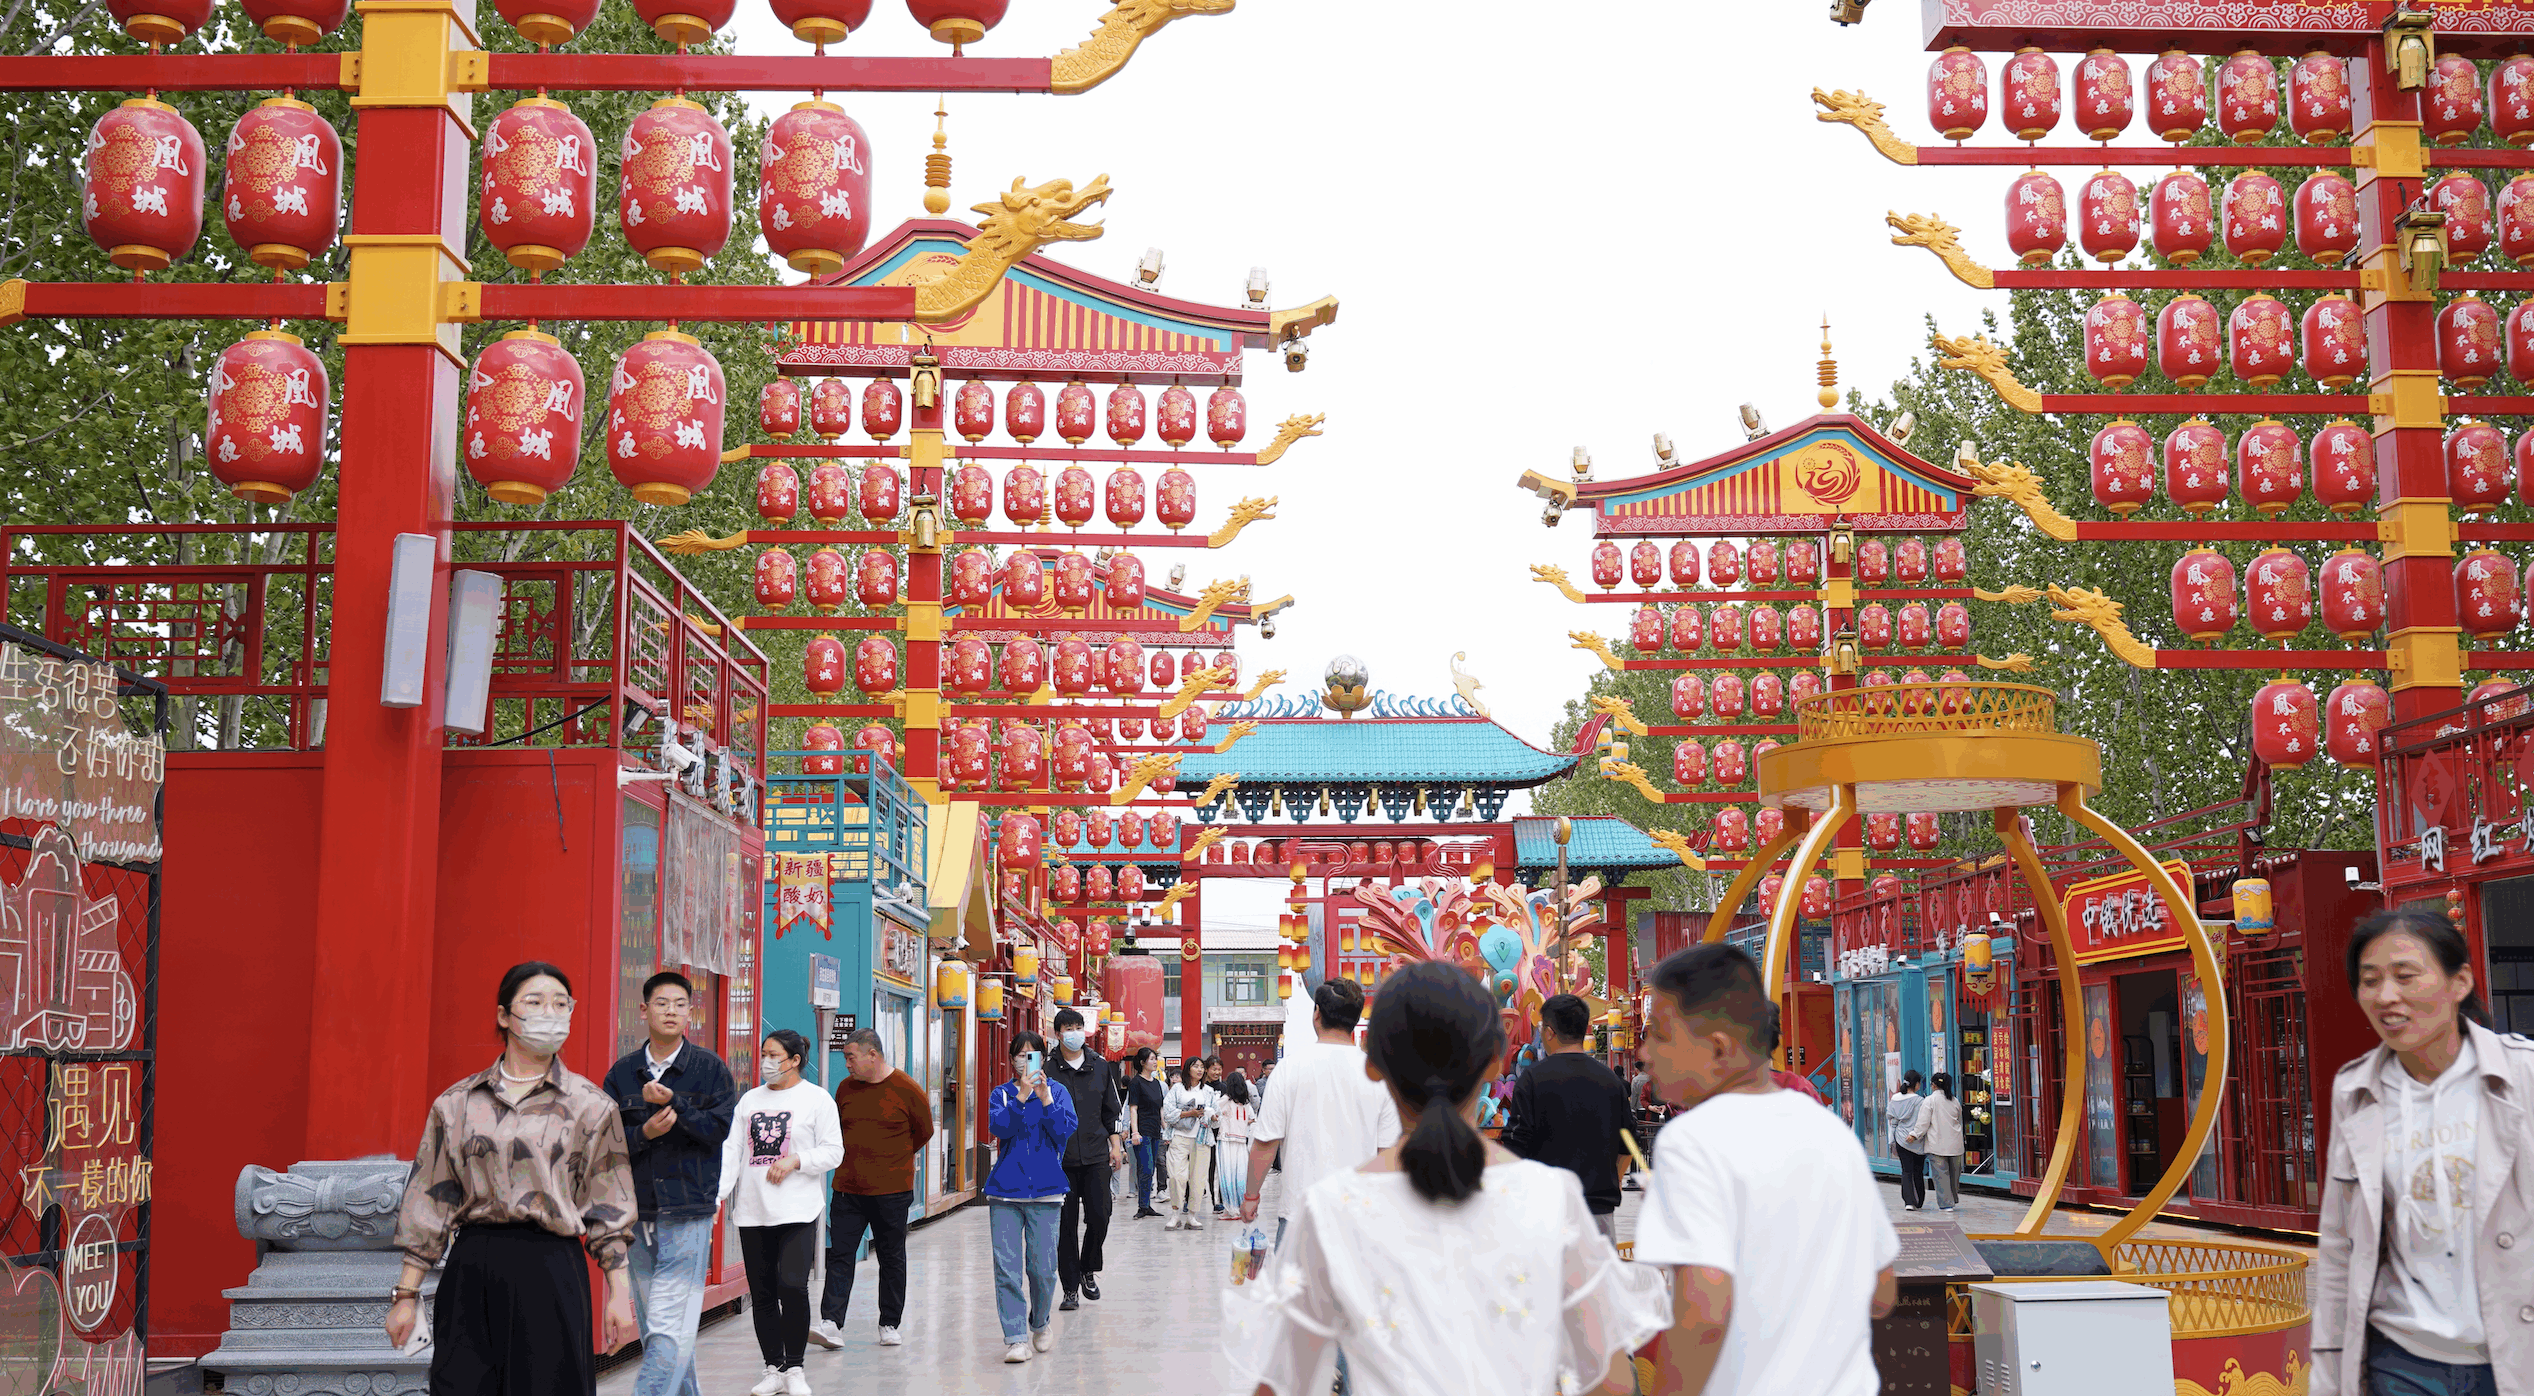 在国艺中联不夜城模式的引领下,凤凰不夜城街区整体遵循典型汉文化